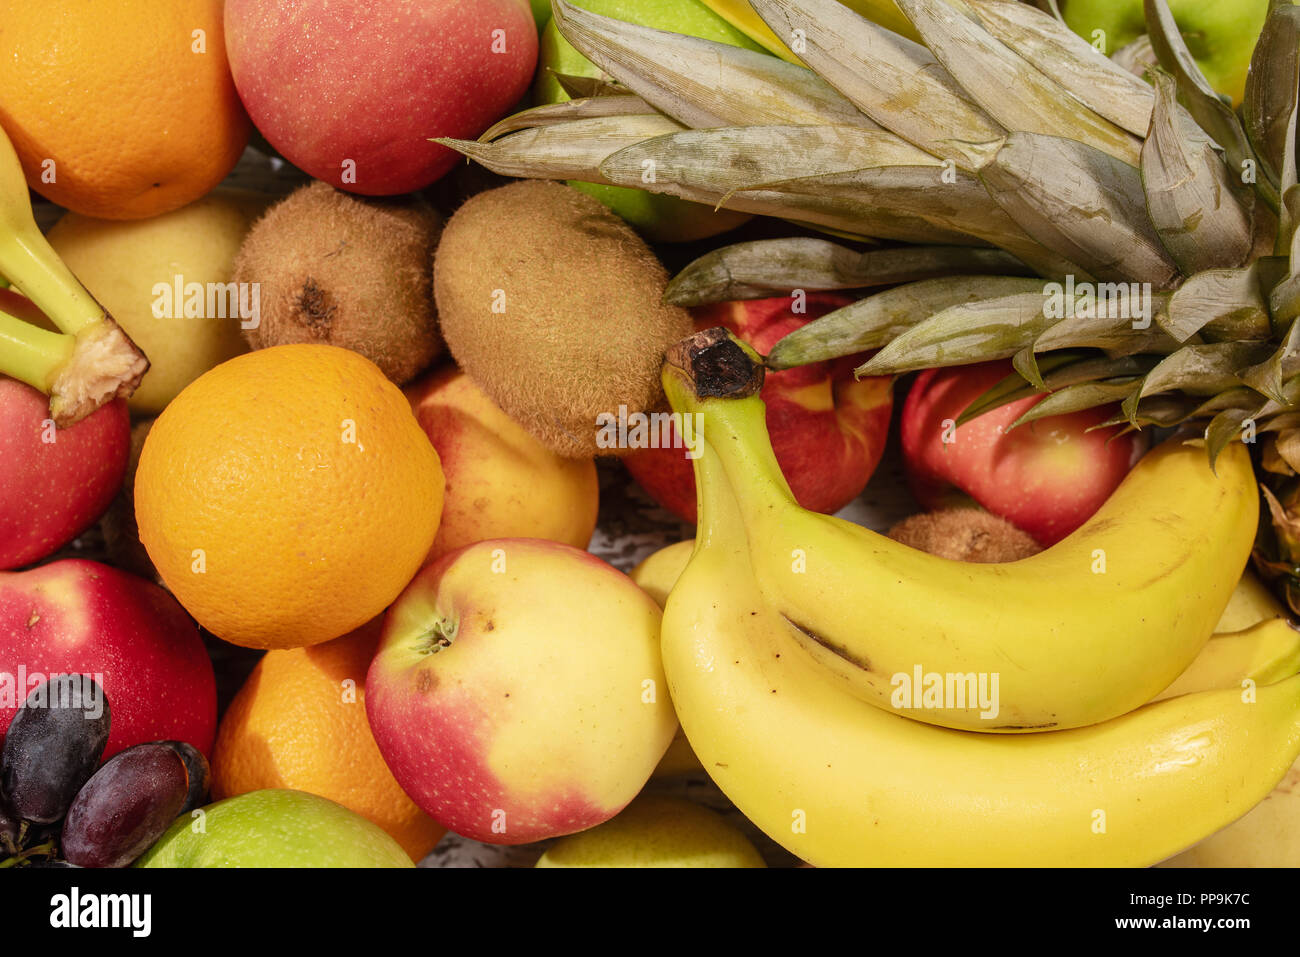 Background from many different exotic fruits.Banana,kiwi,orange. Stock Photo